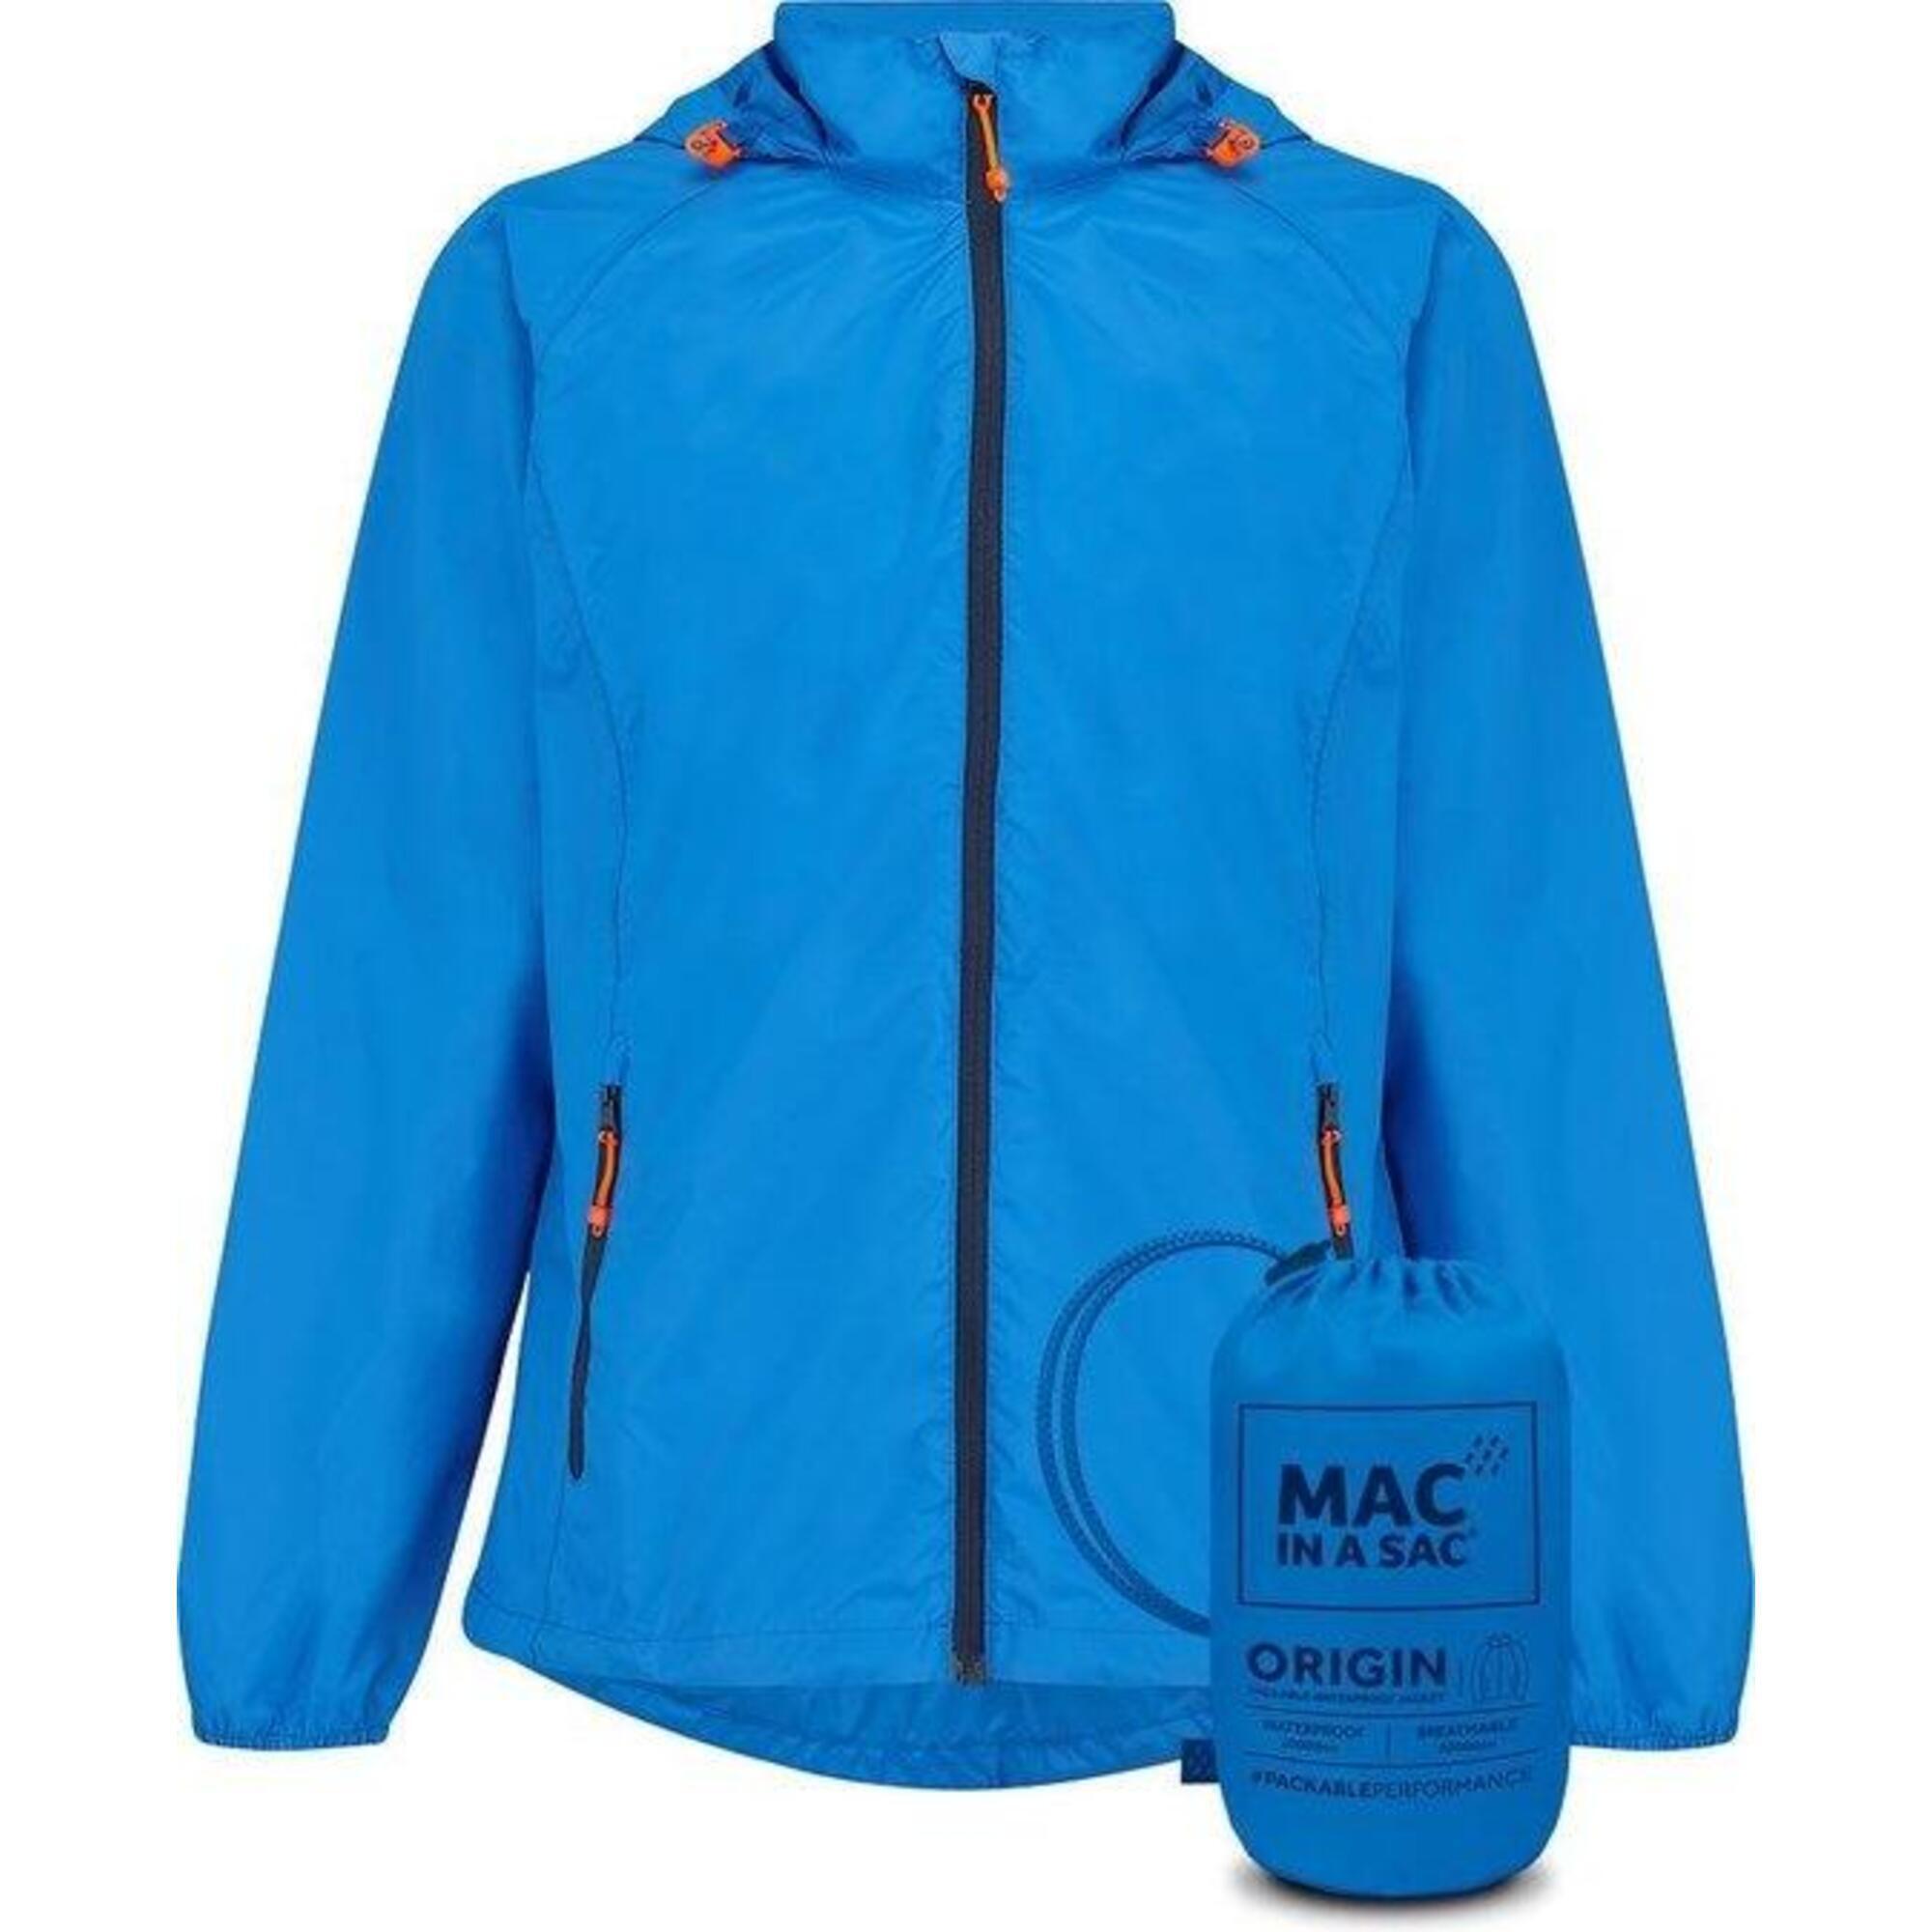 MAC IN A SAC Origin Unisex Packable Waterproof Jacket